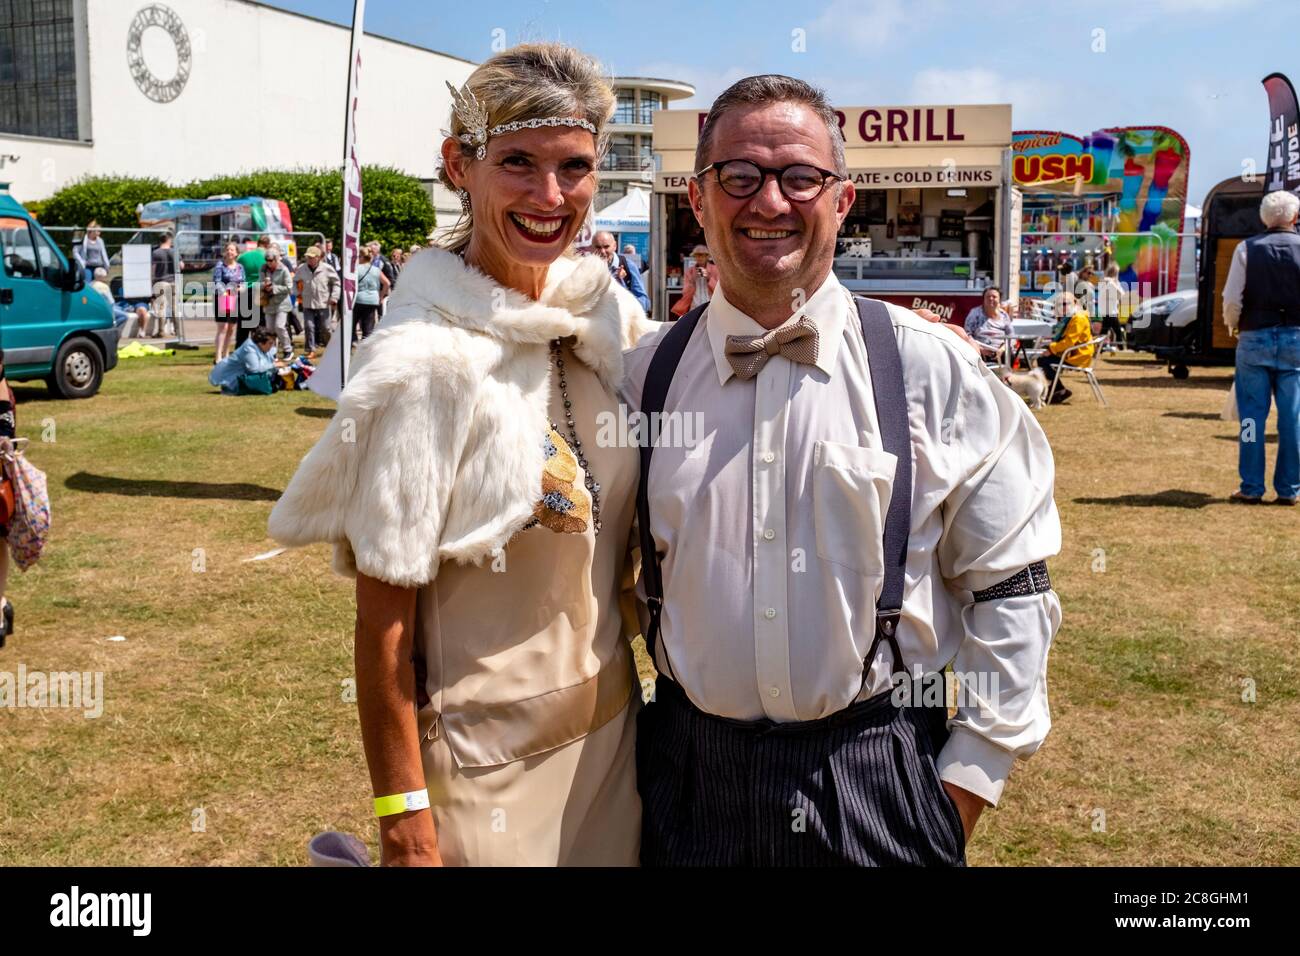 Menschen in historischen Kostümen auf der Great Gatsby Fair, Bexhill on Sea, East Sussex, Großbritannien Stockfoto